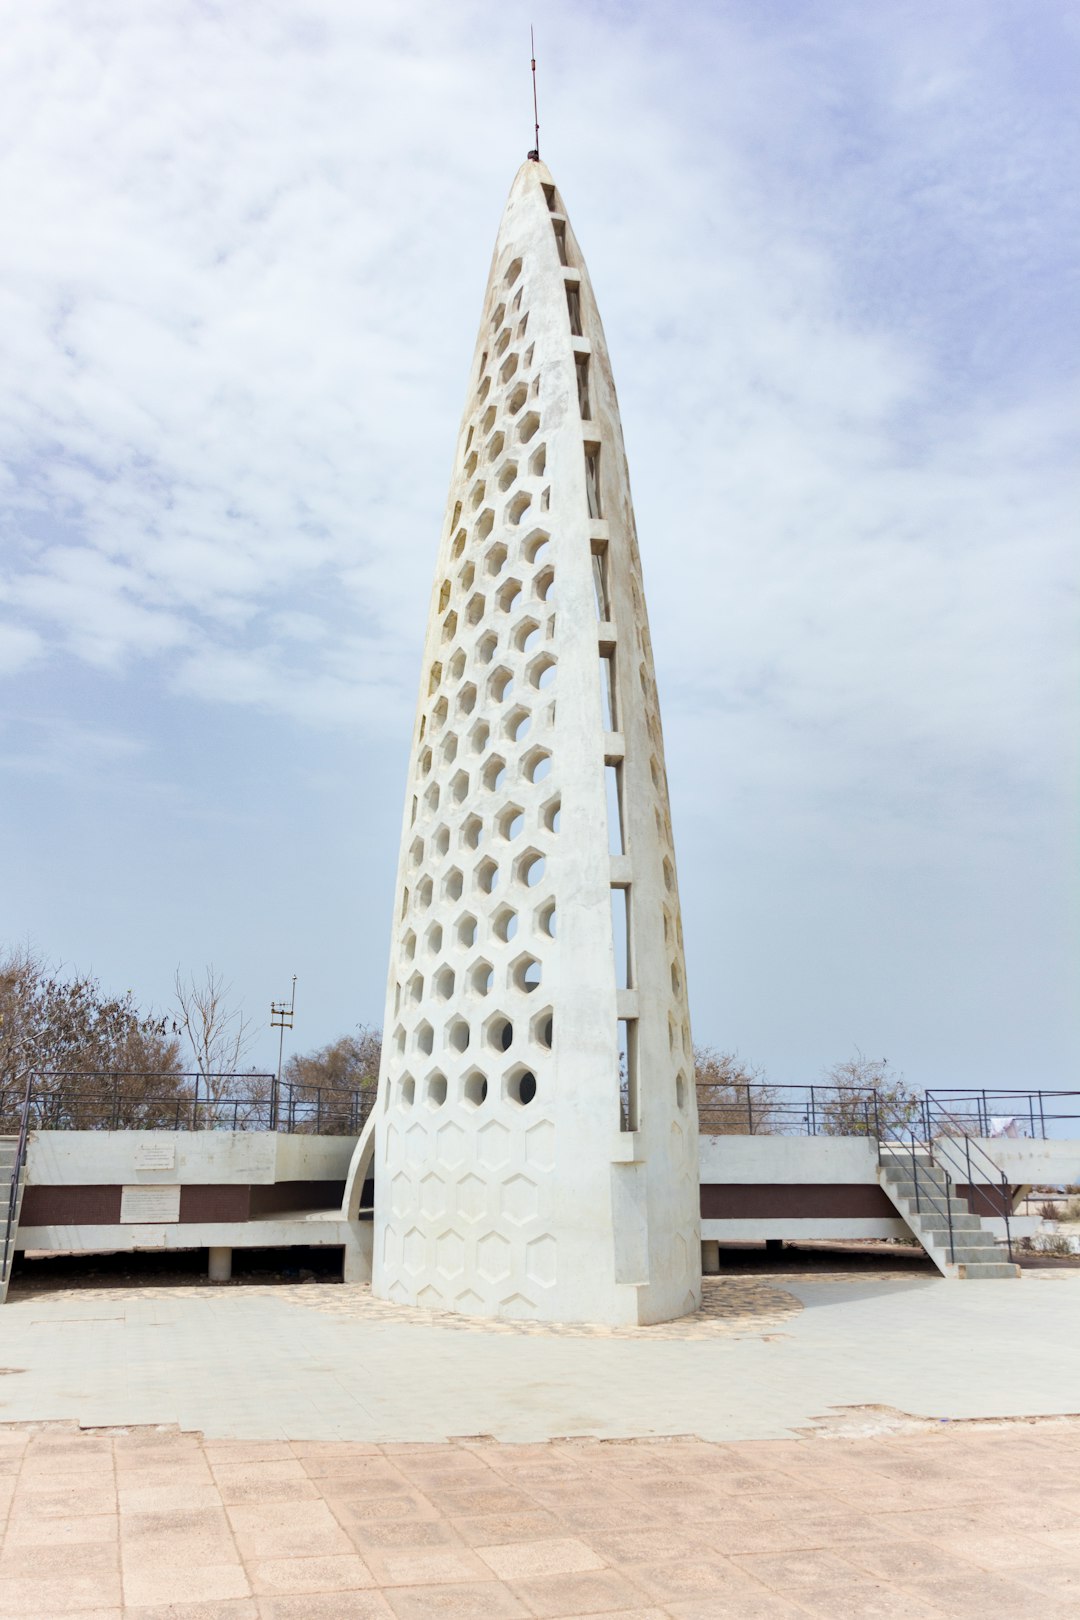 travelers stories about Landmark in Gorée, Senegal